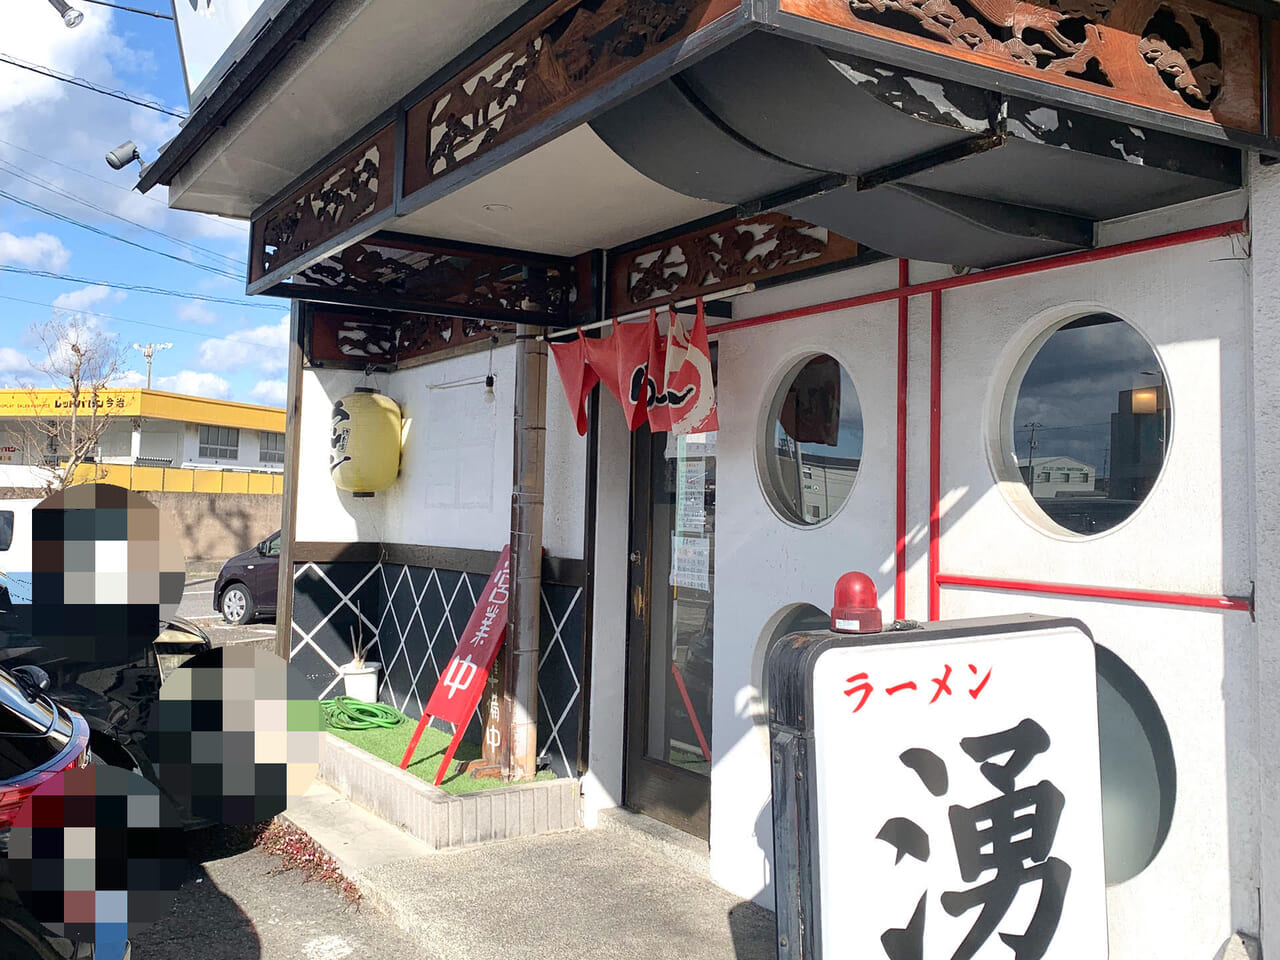 東村にお店を構える人気ラーメン店「ラーメン 湧」が12月29日を以て閉店!!